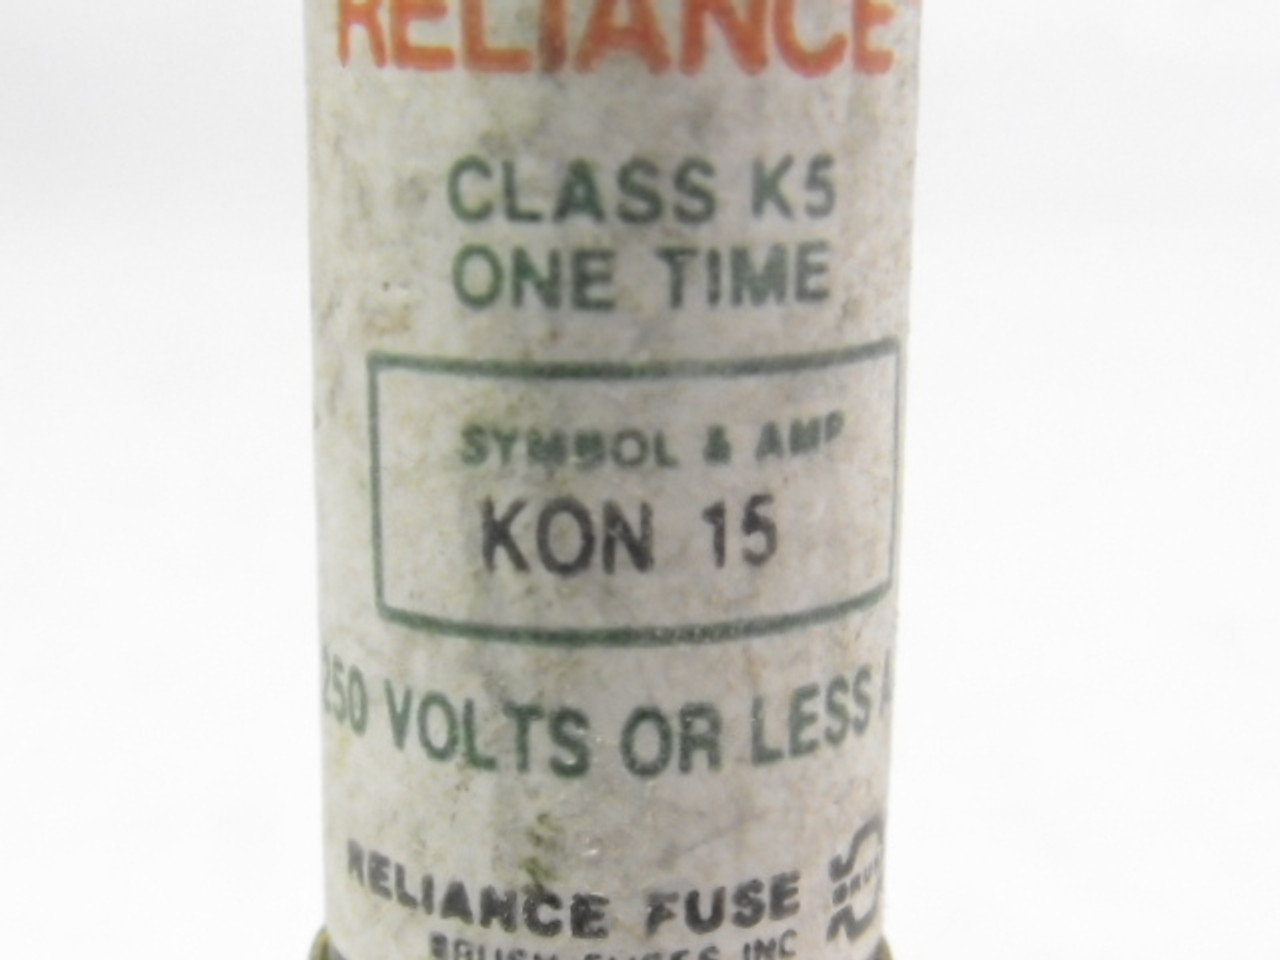 Reliance KON-15 One Time Fuse 15A 250V USED